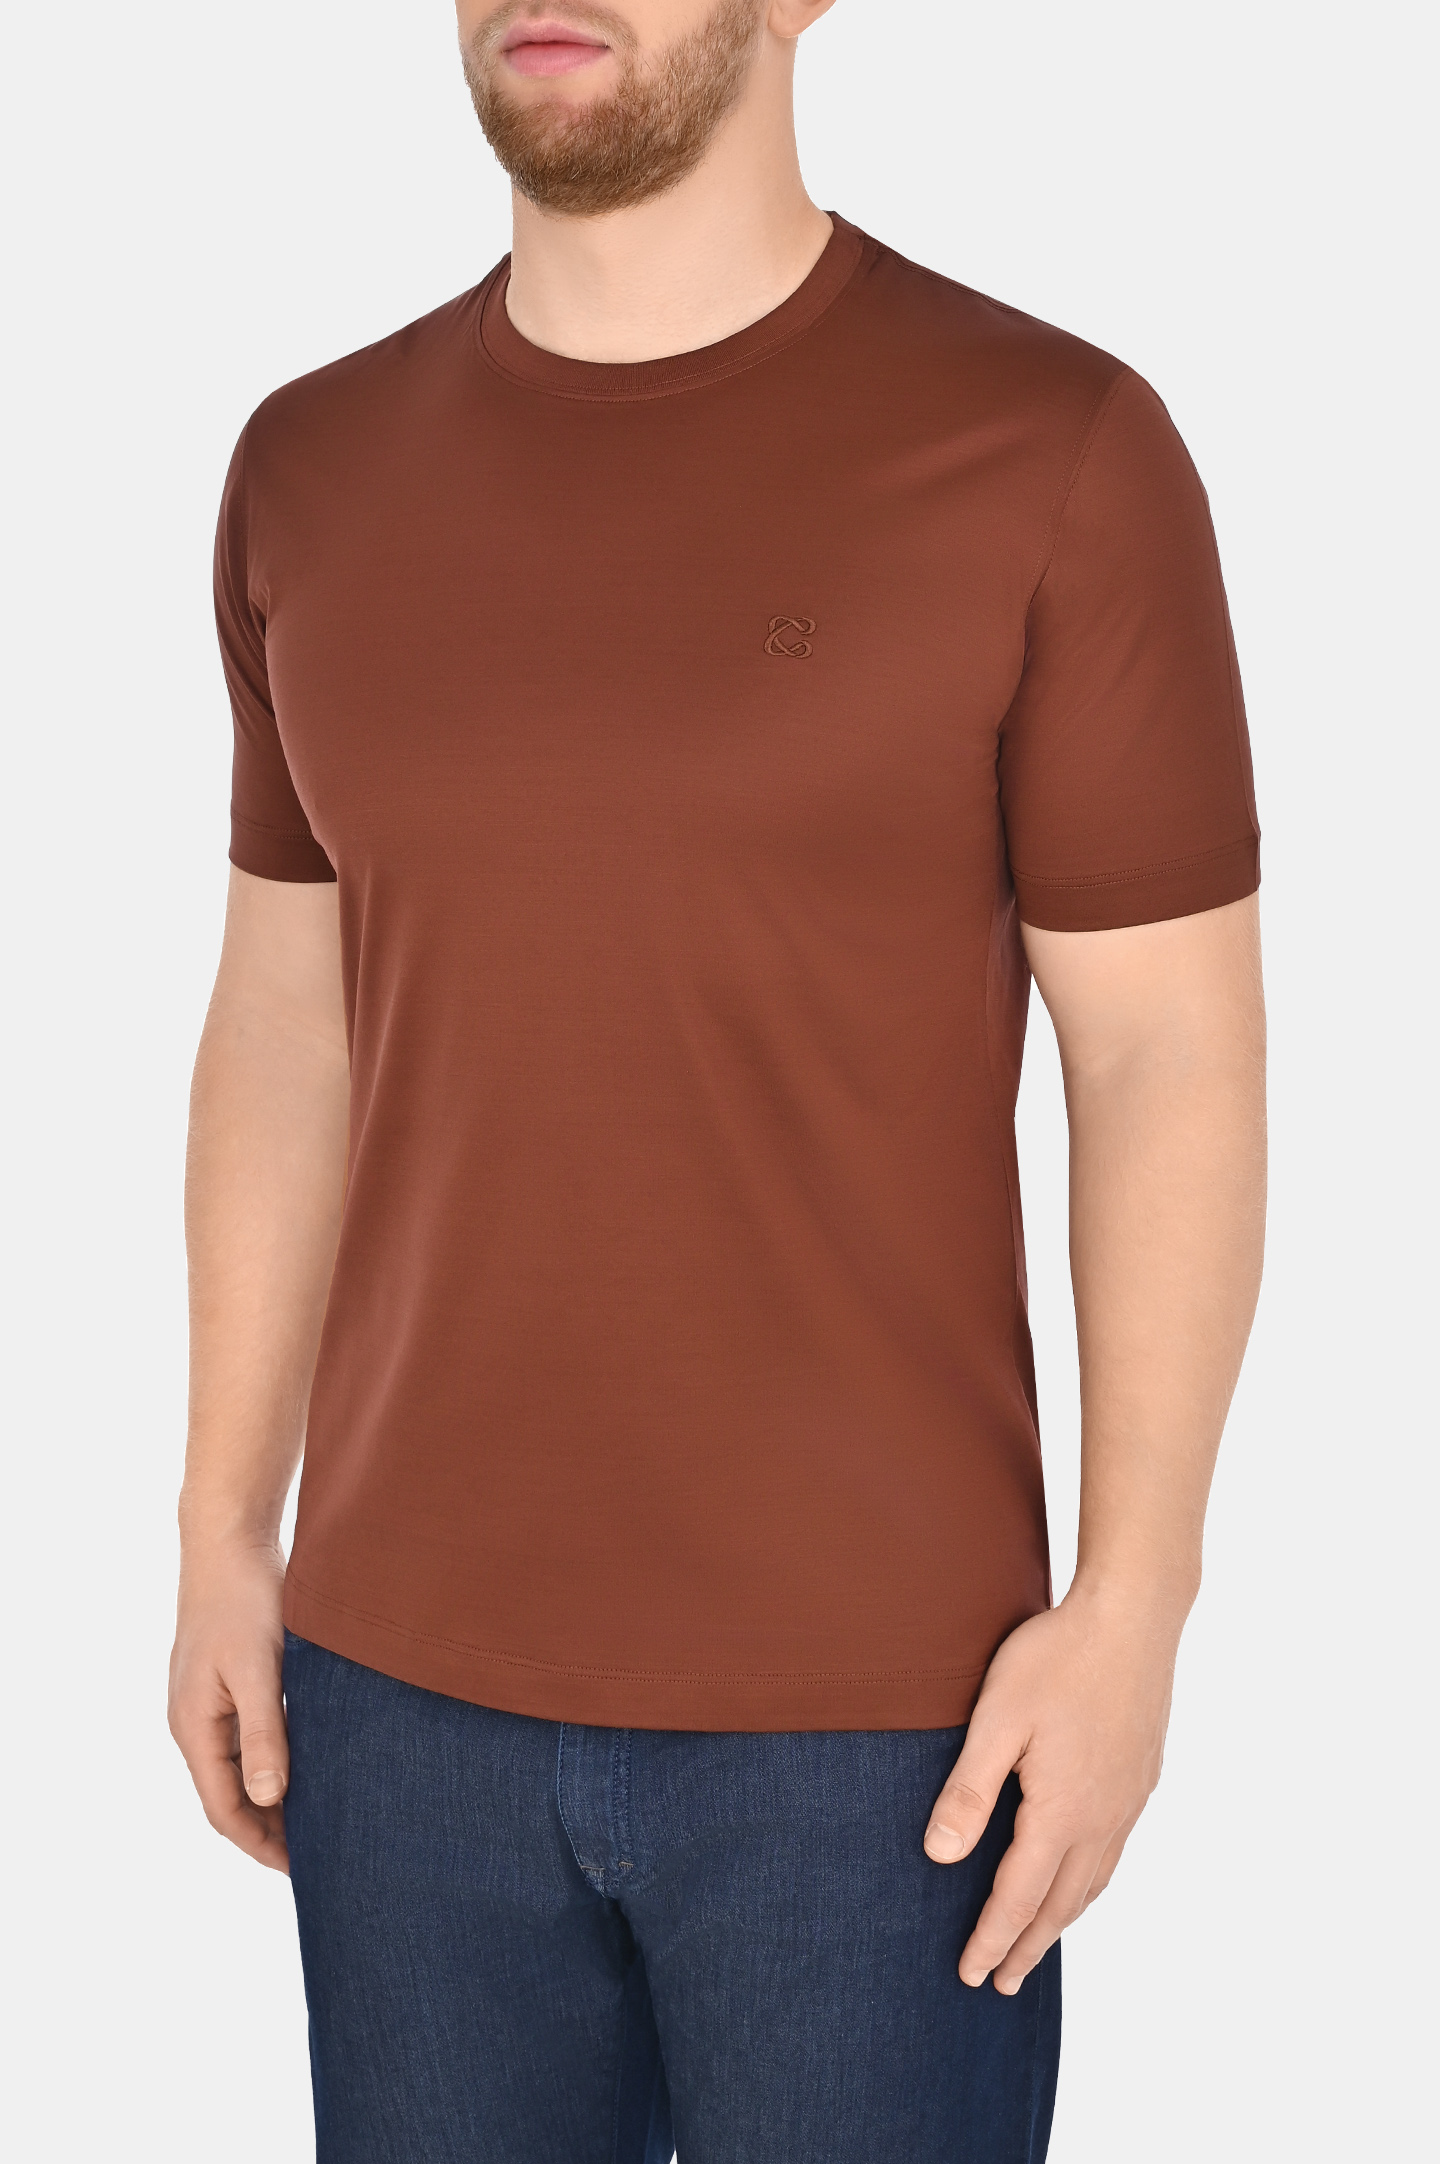 Базовая хлопковая футболка CASTANGIA DM66, цвет: Коричневый, Мужской